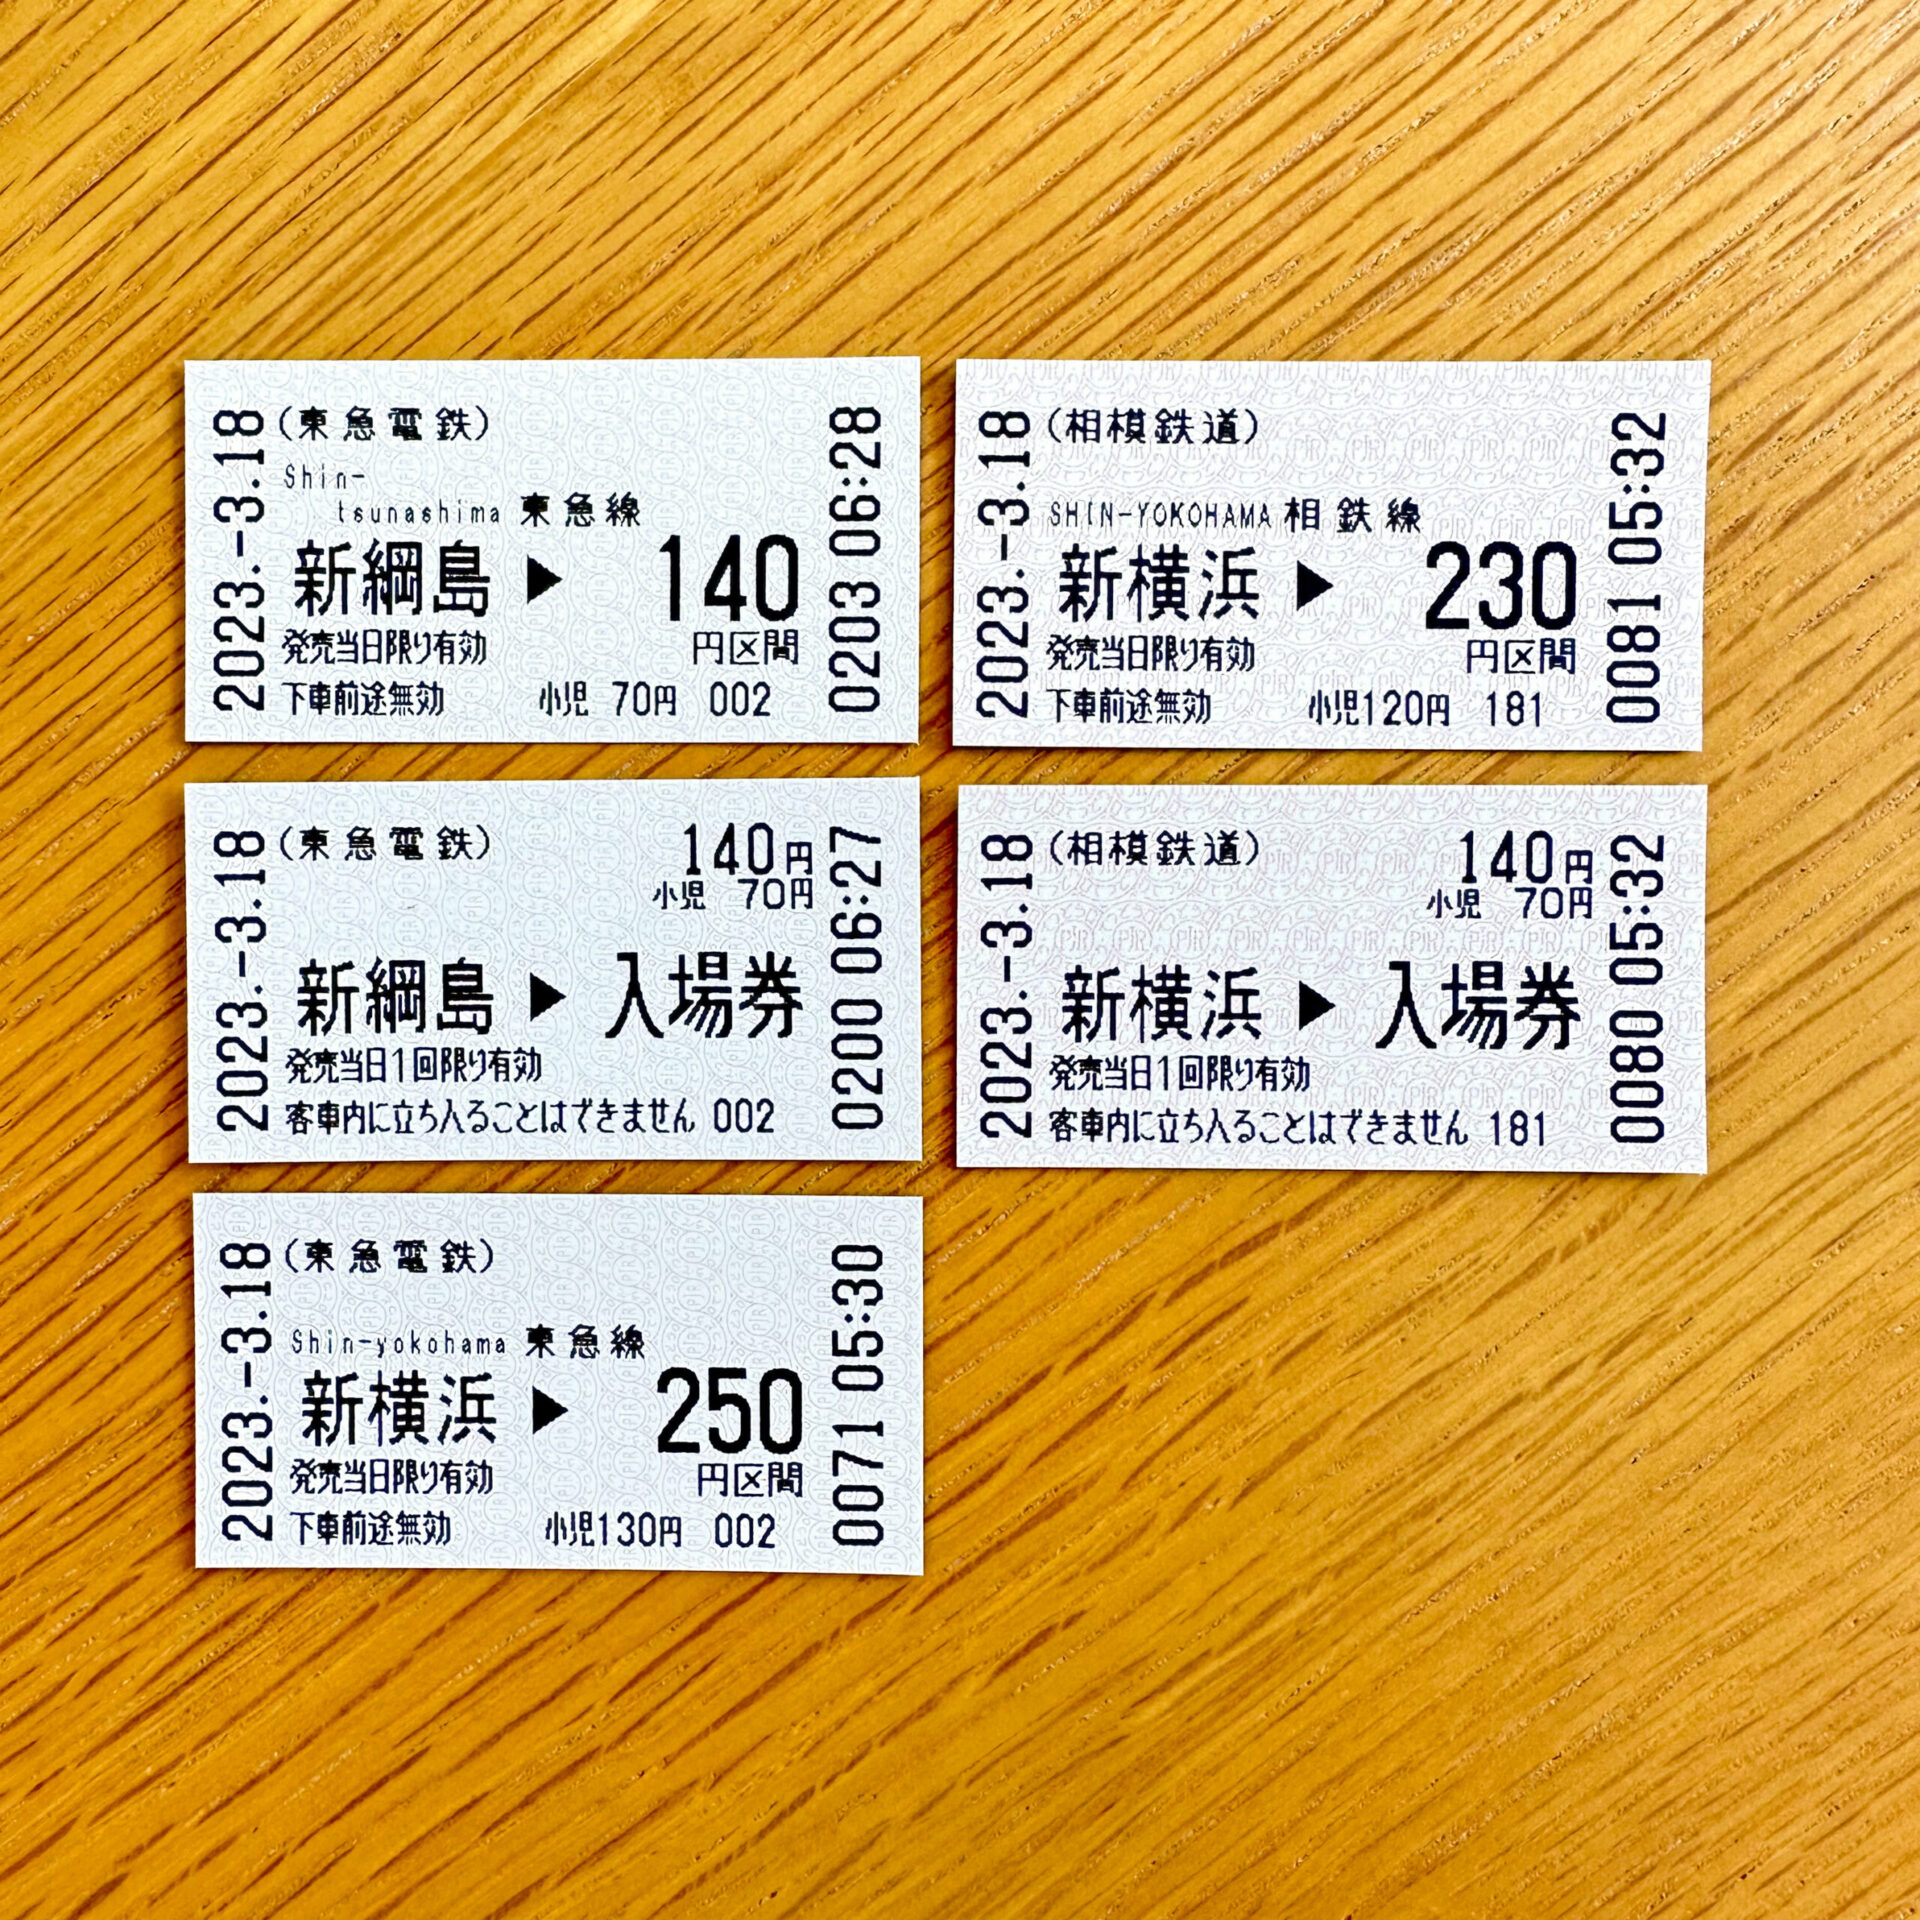 新横浜駅・新綱島駅発行の入場券・普通乗車券